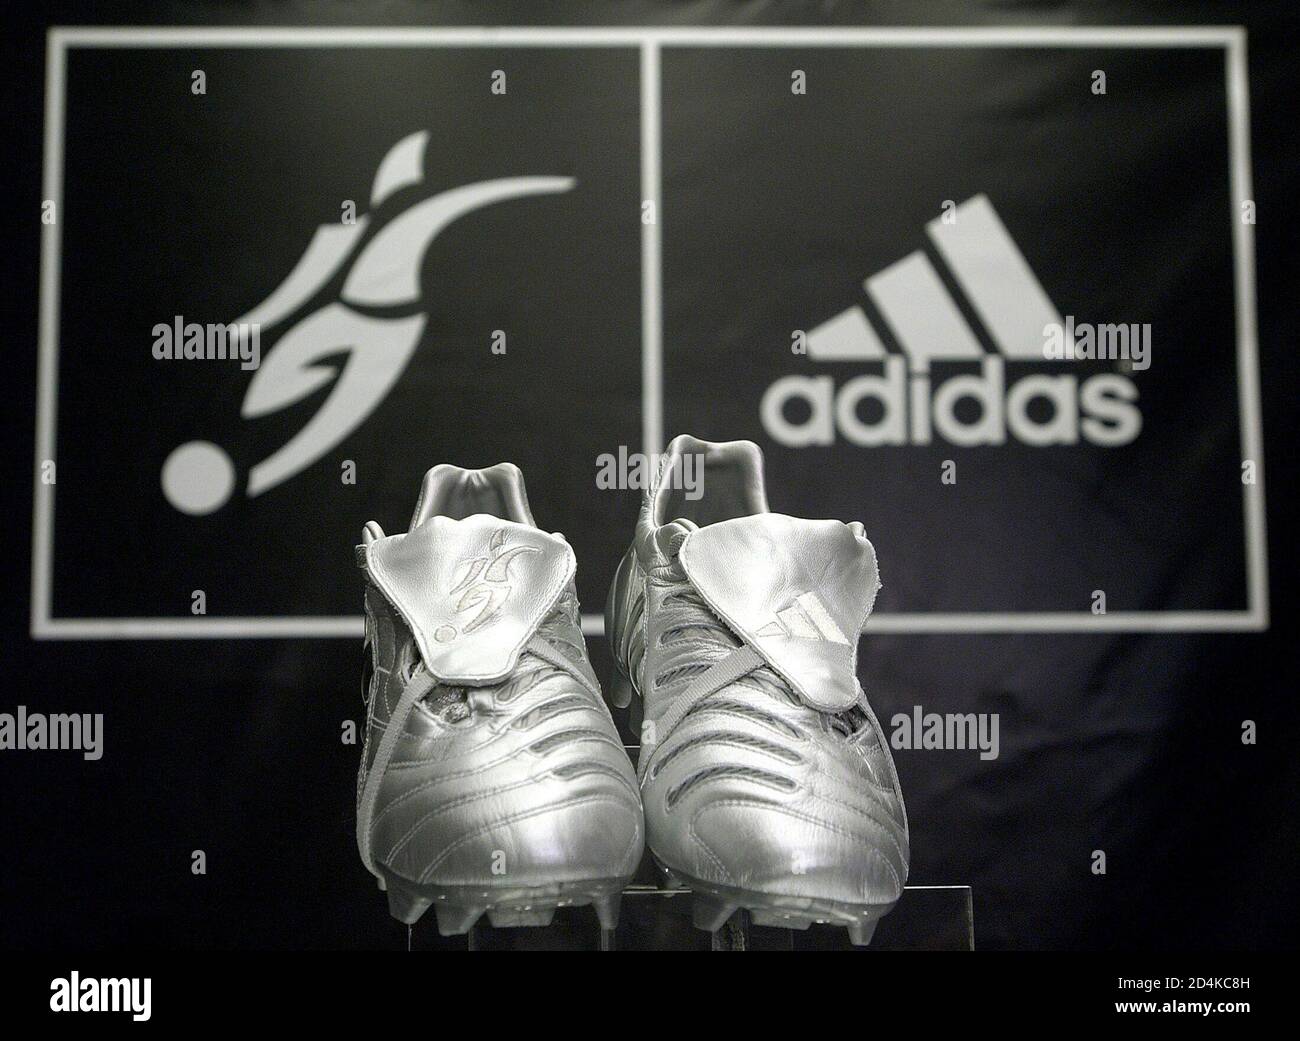 David Beckham] presenta le nuove scarpe da calcio Adidas Predator Pulse  durante un evento promozionale presso il negozio Adidas di New York, 1  giugno 2005. [Beckham è un centrocampista della nazionale di